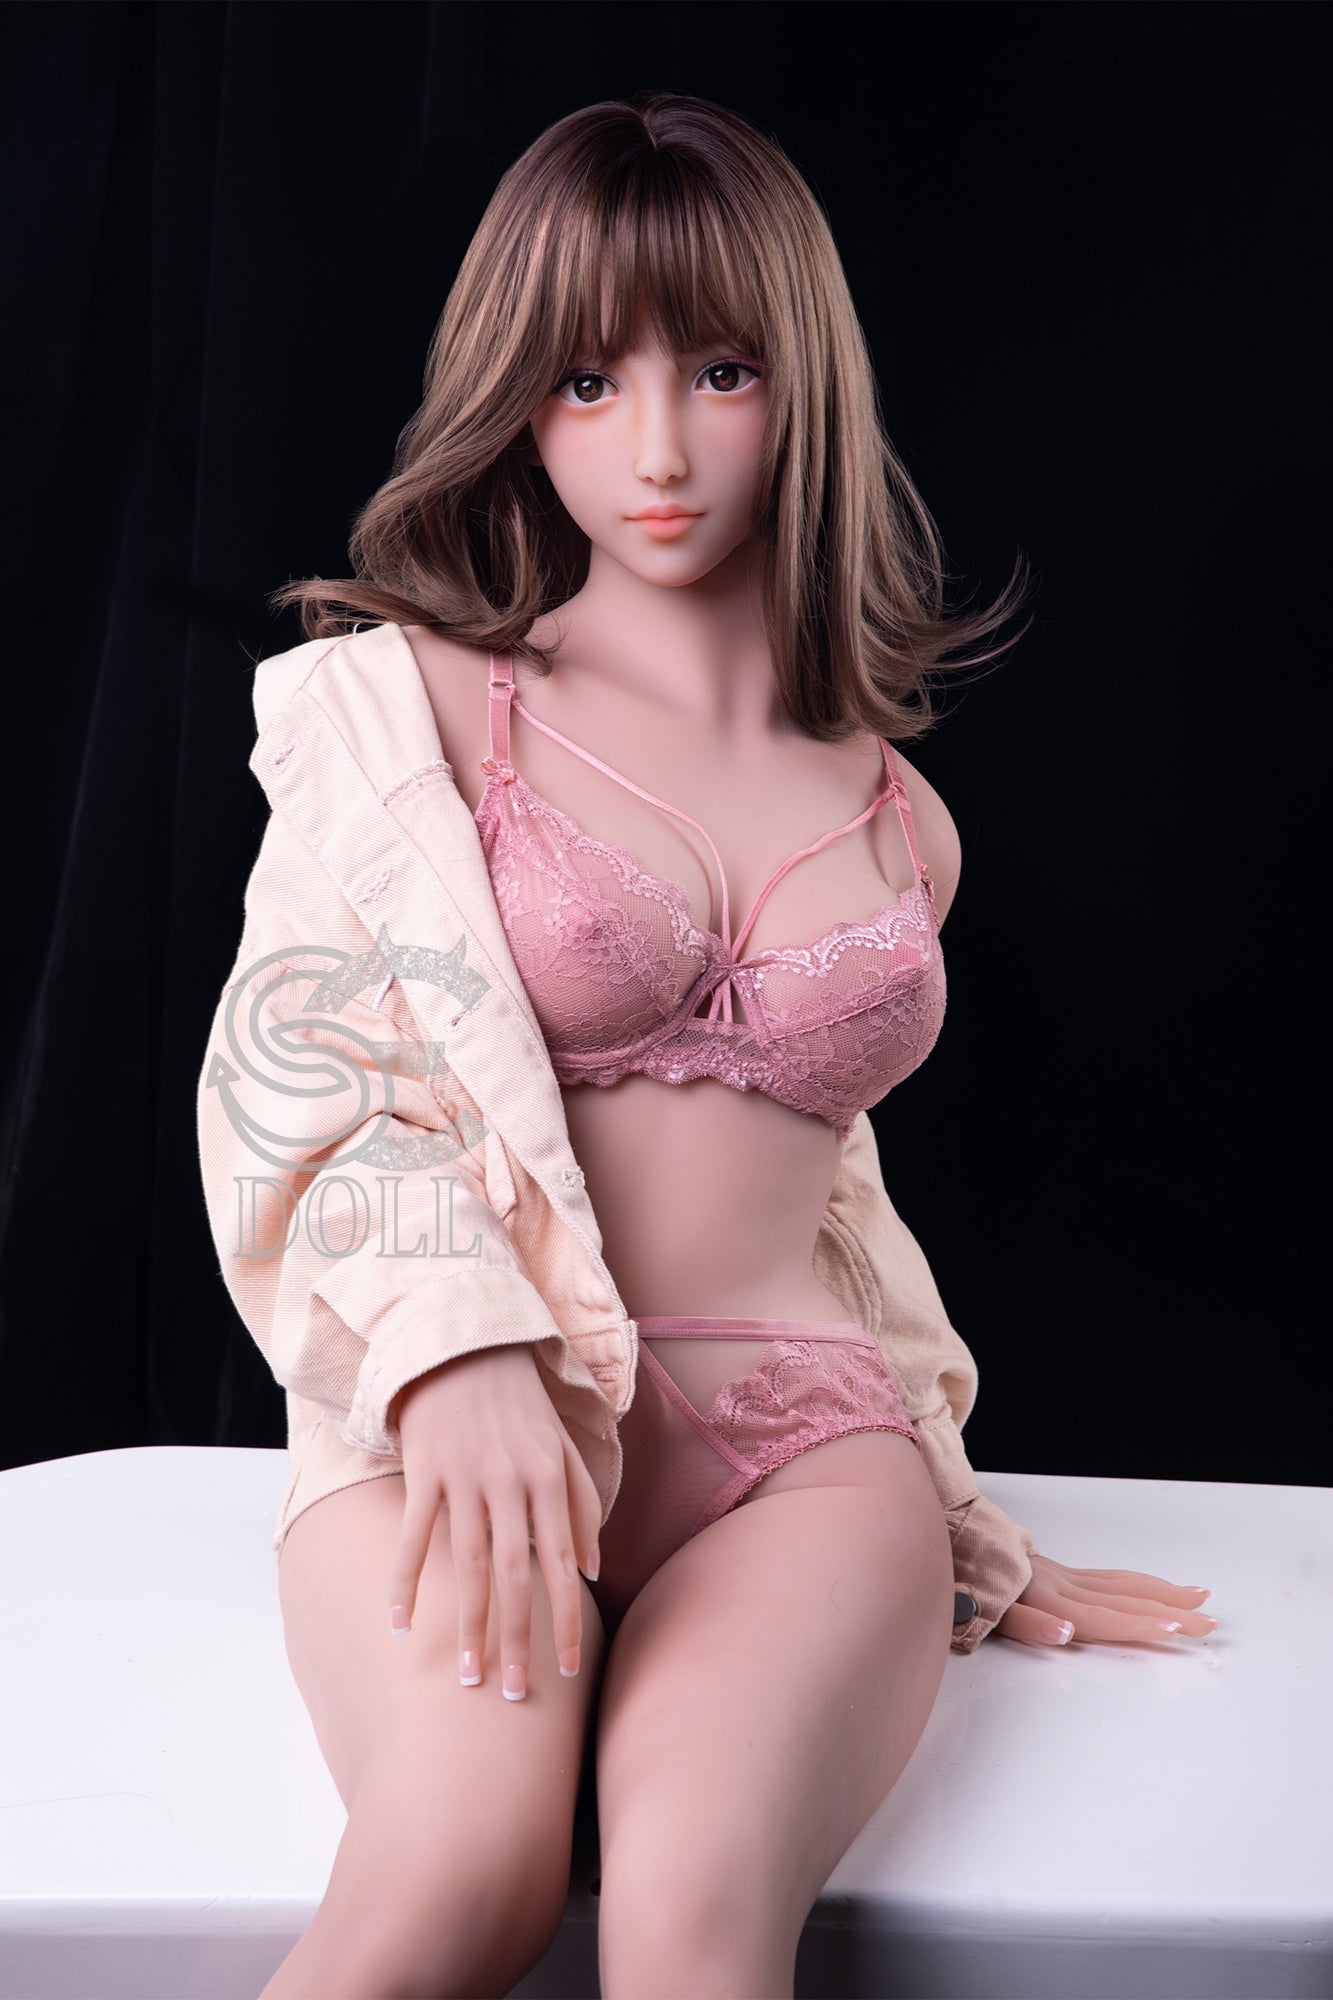 SE Doll - 158 cm D Cup TPE Doll - Skye (5ft 2in) - Love Dolls 4U